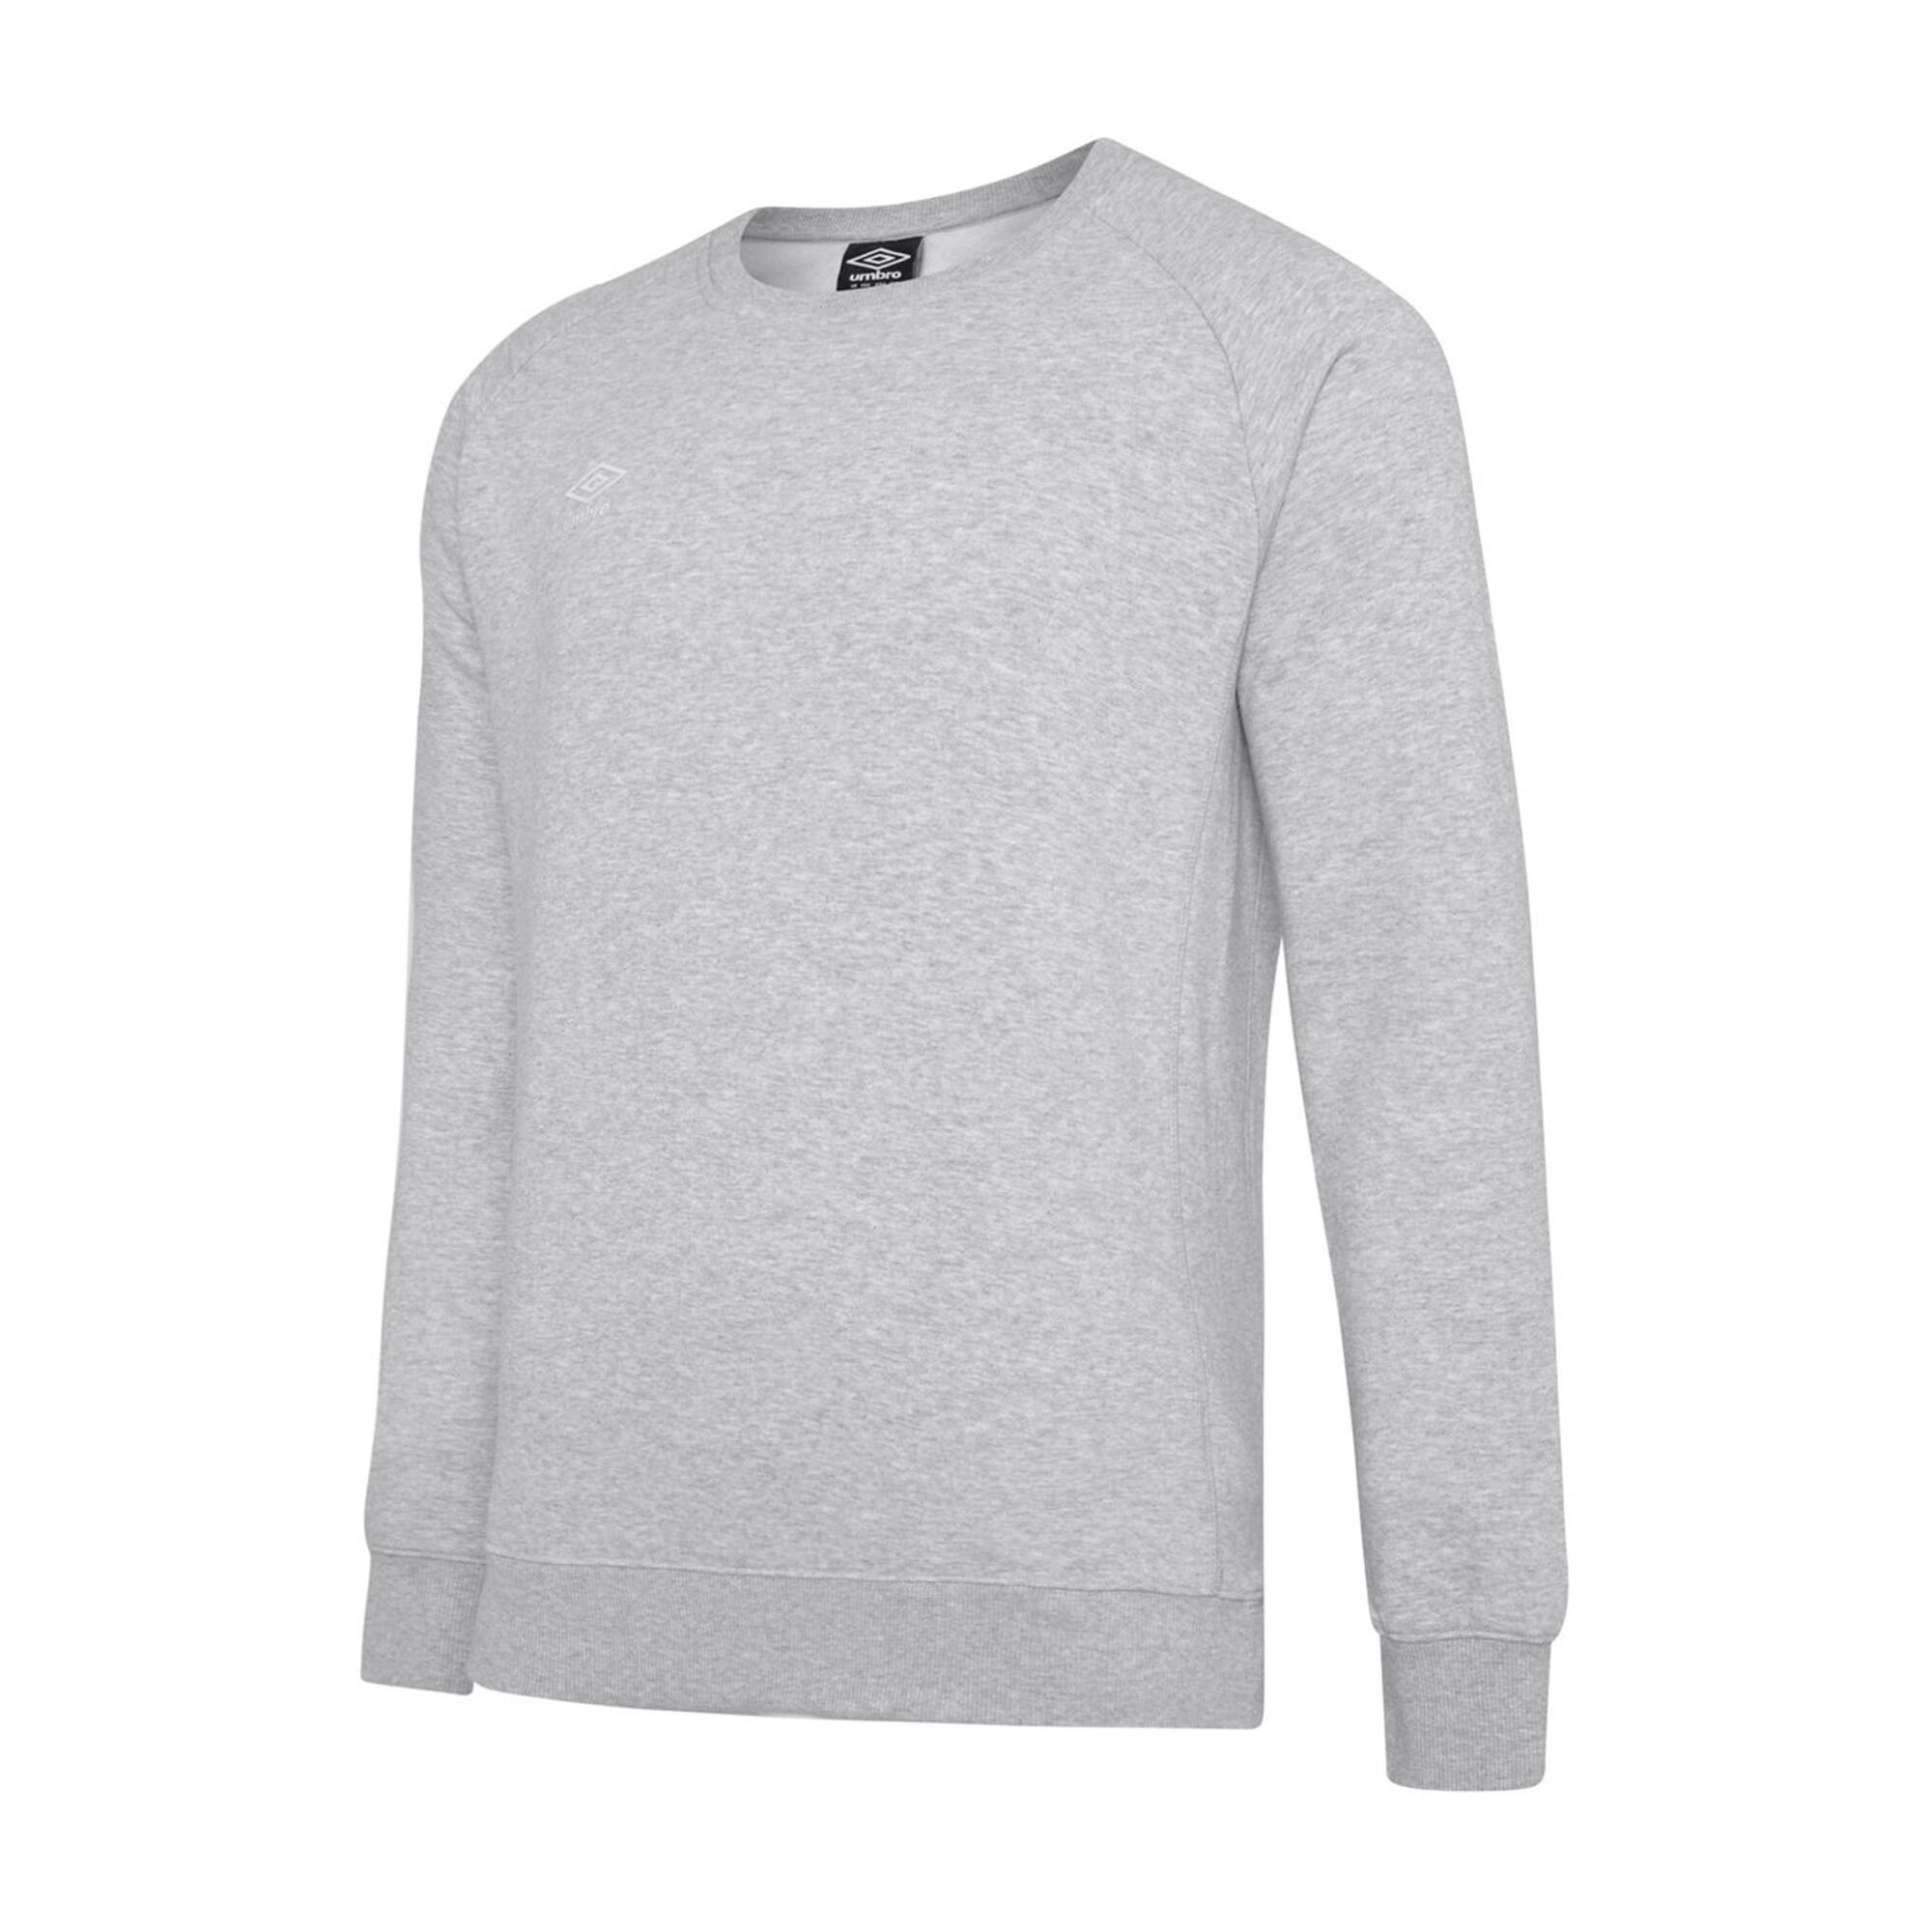 UMBRO Mens Club Leisure Sweatshirt (Grey Marl/White)